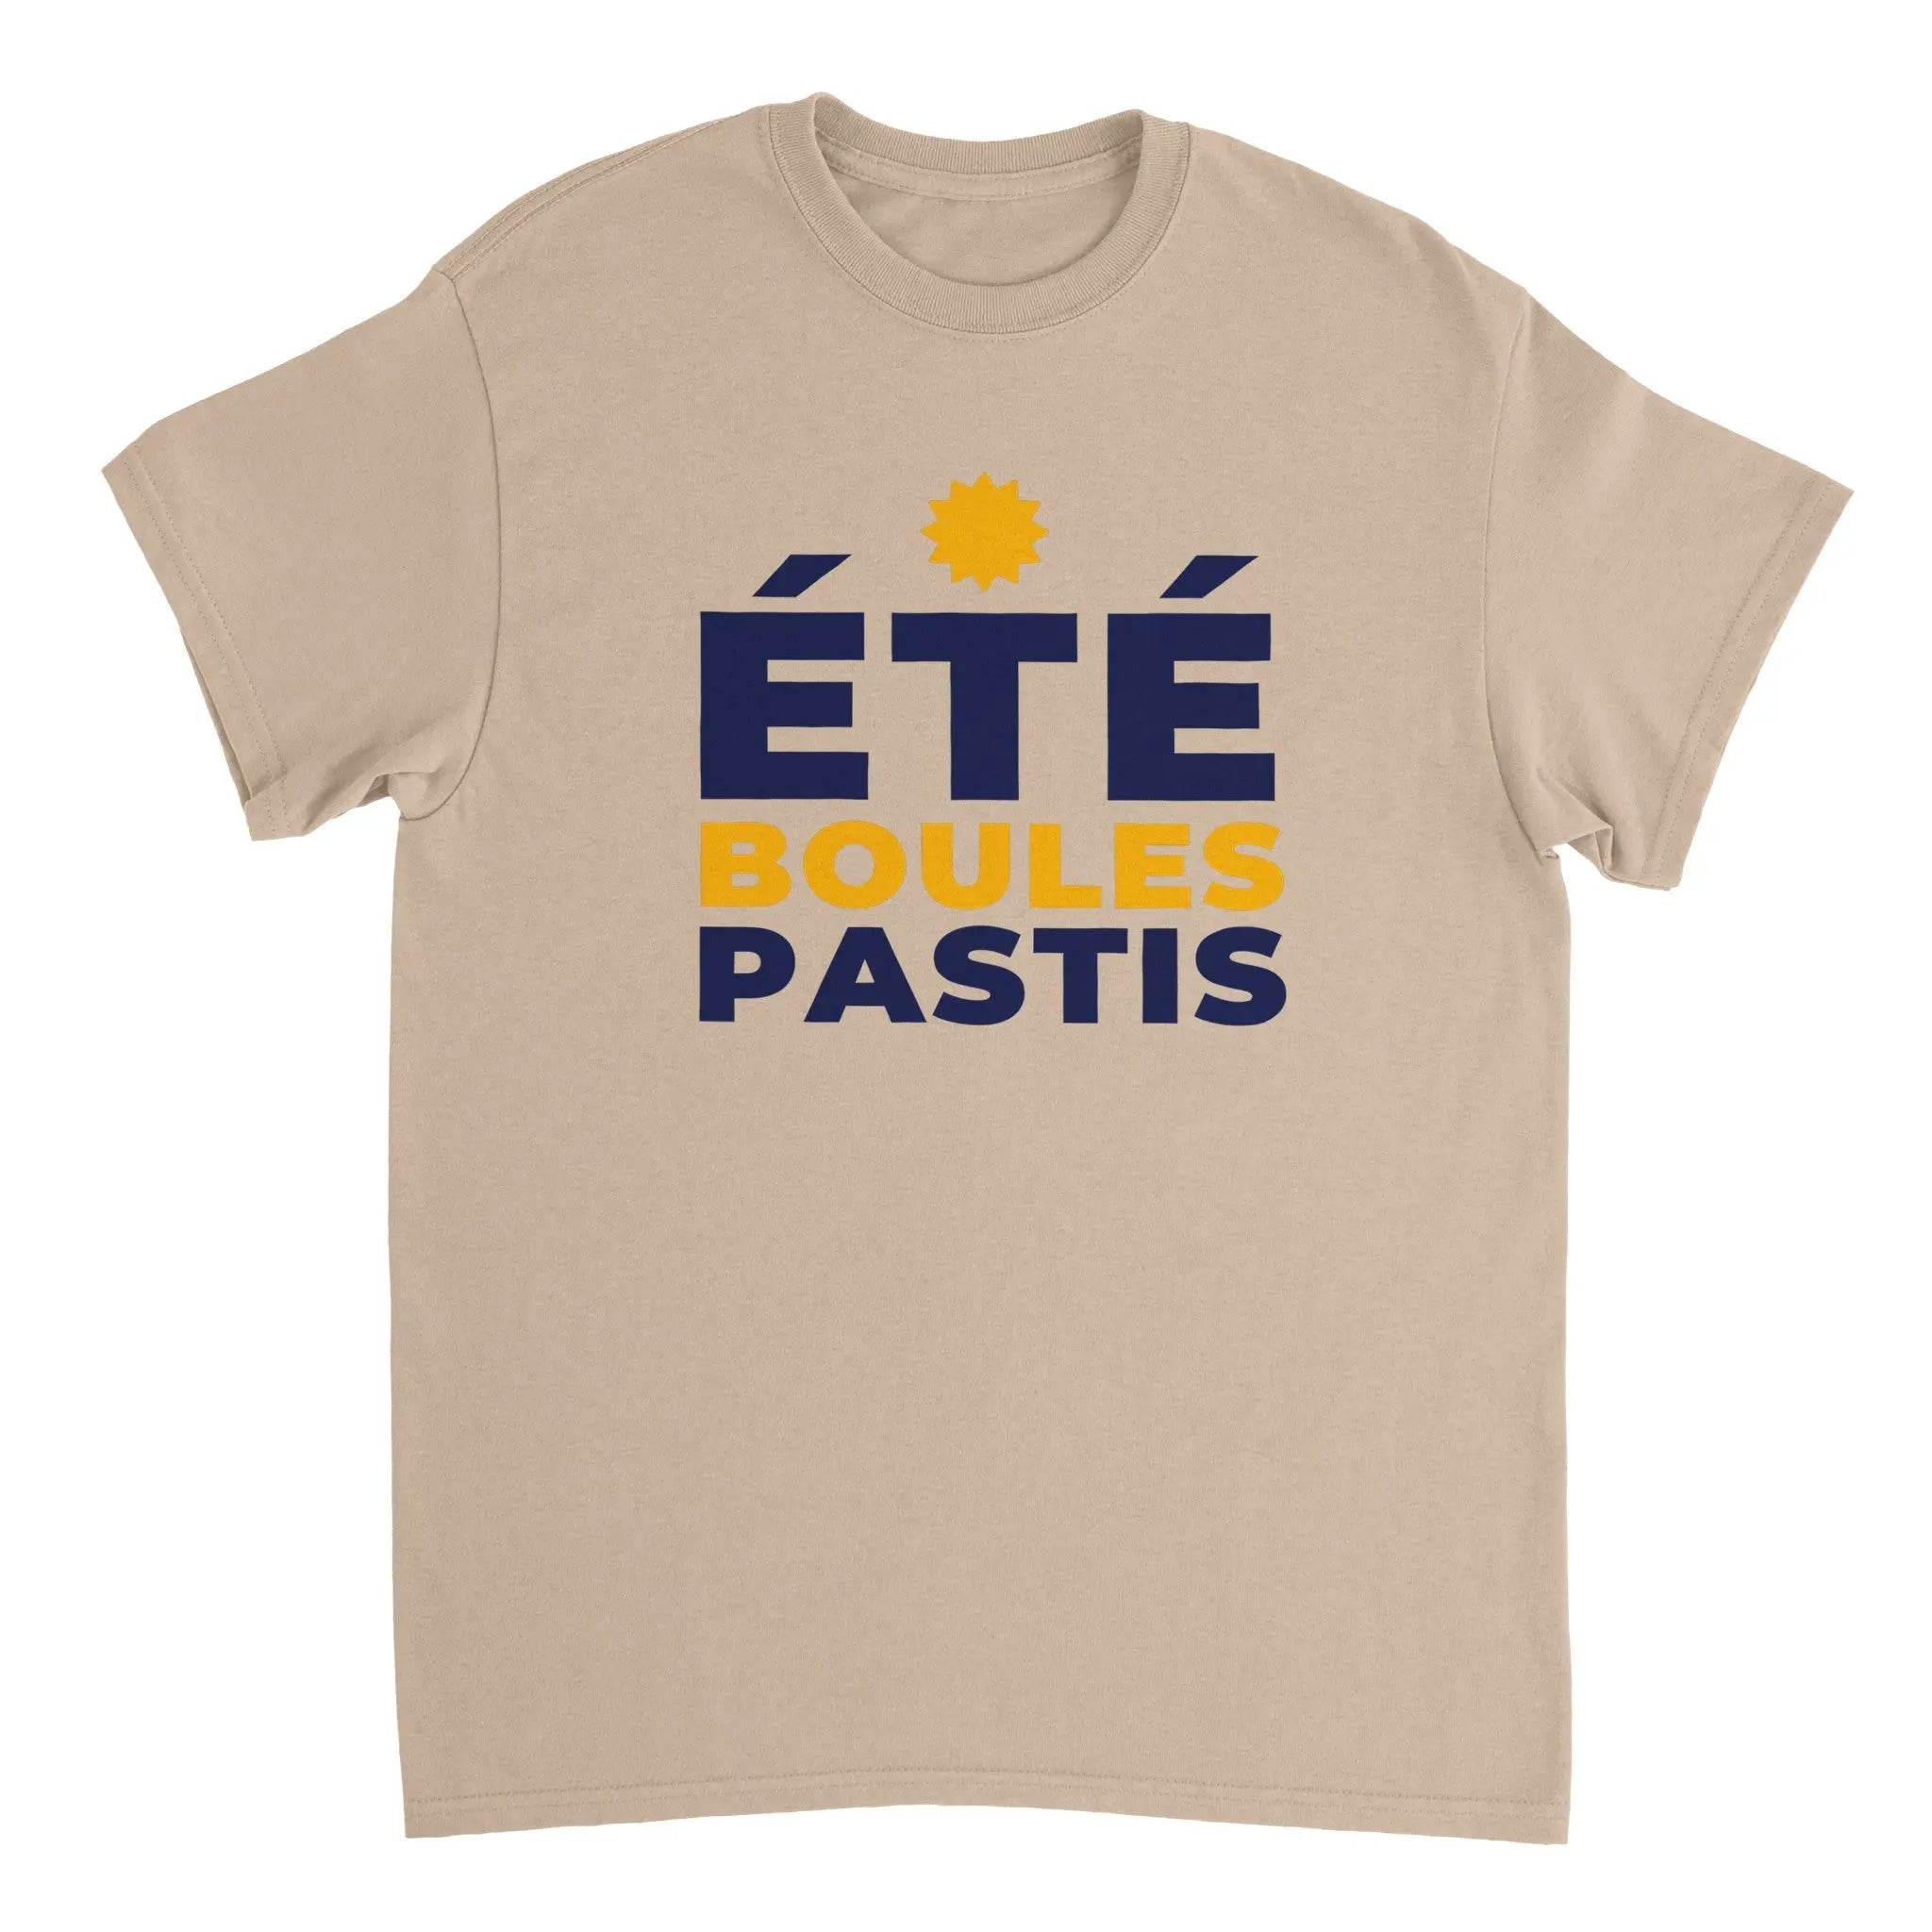 T-shirt Pastis "été boules pastis" | Mixte French Humour